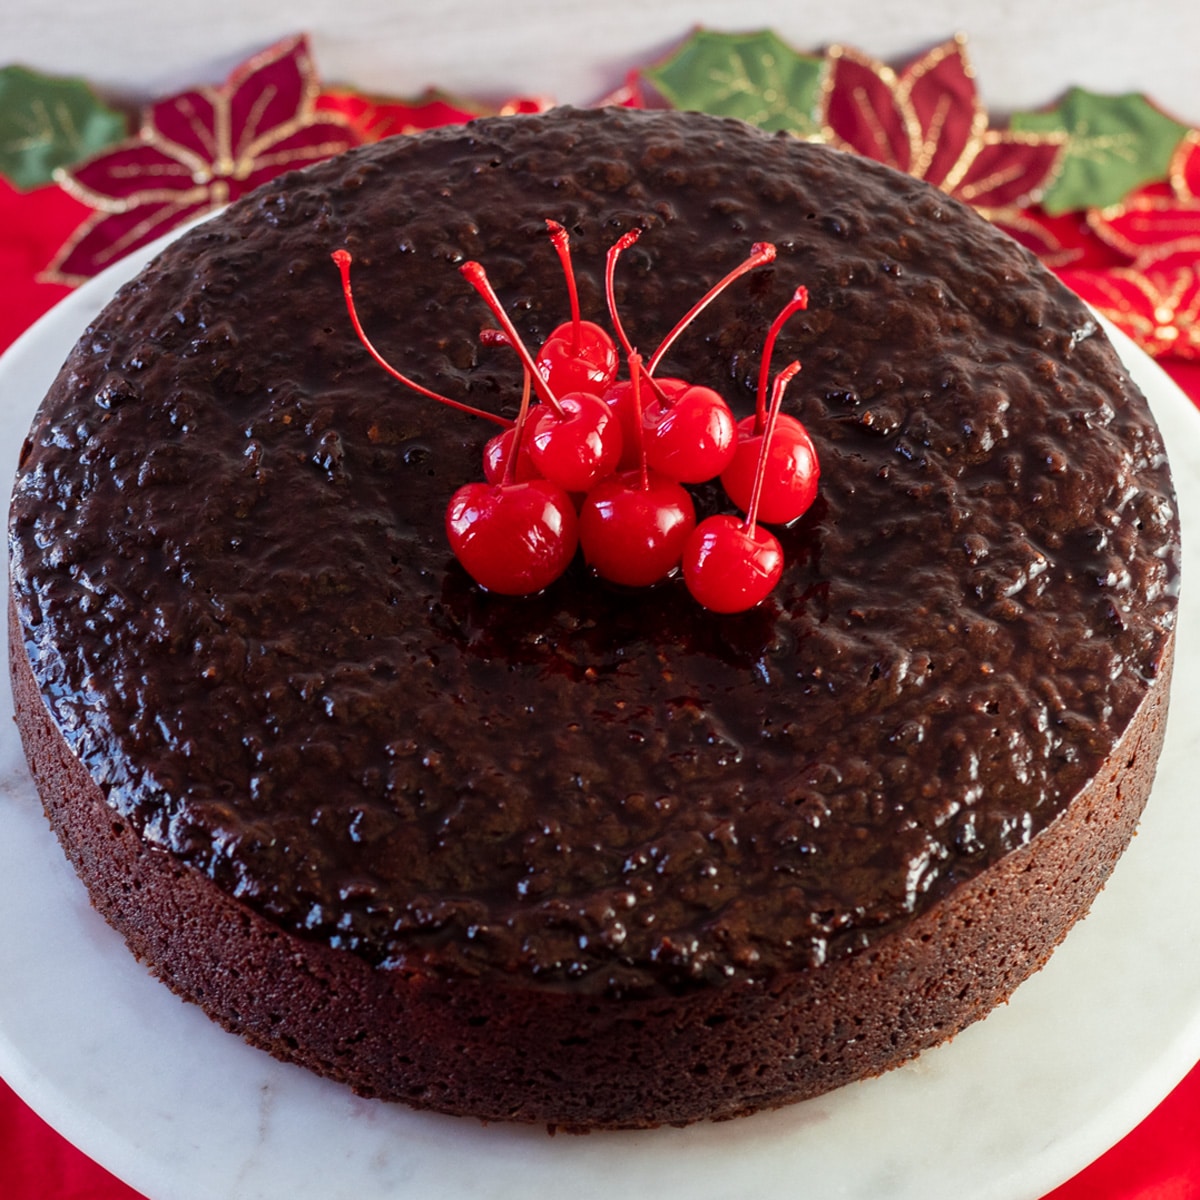 Квадратное изображение, смотрящее на ямайский черный пирог с вишней на вершине торта.